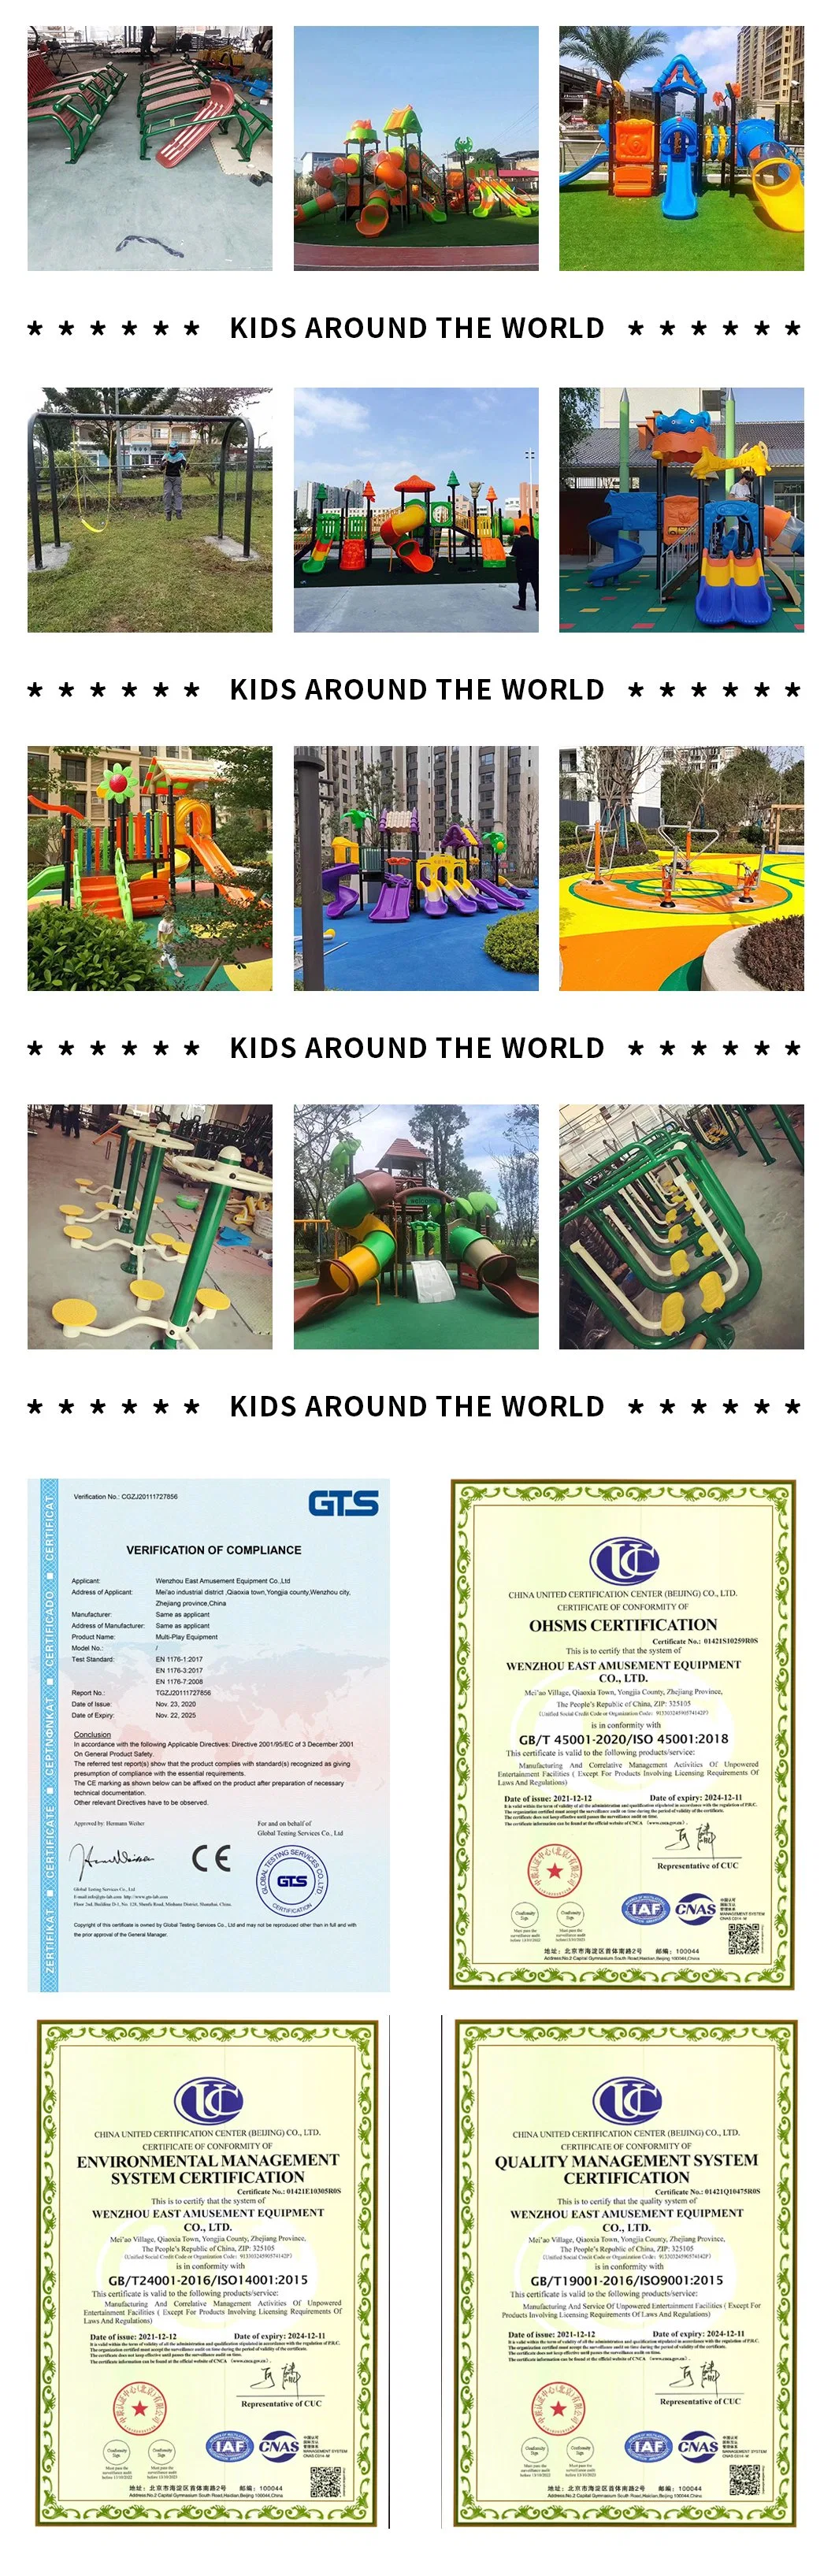 Outdoor Playground Playground Equipment Kids Playground